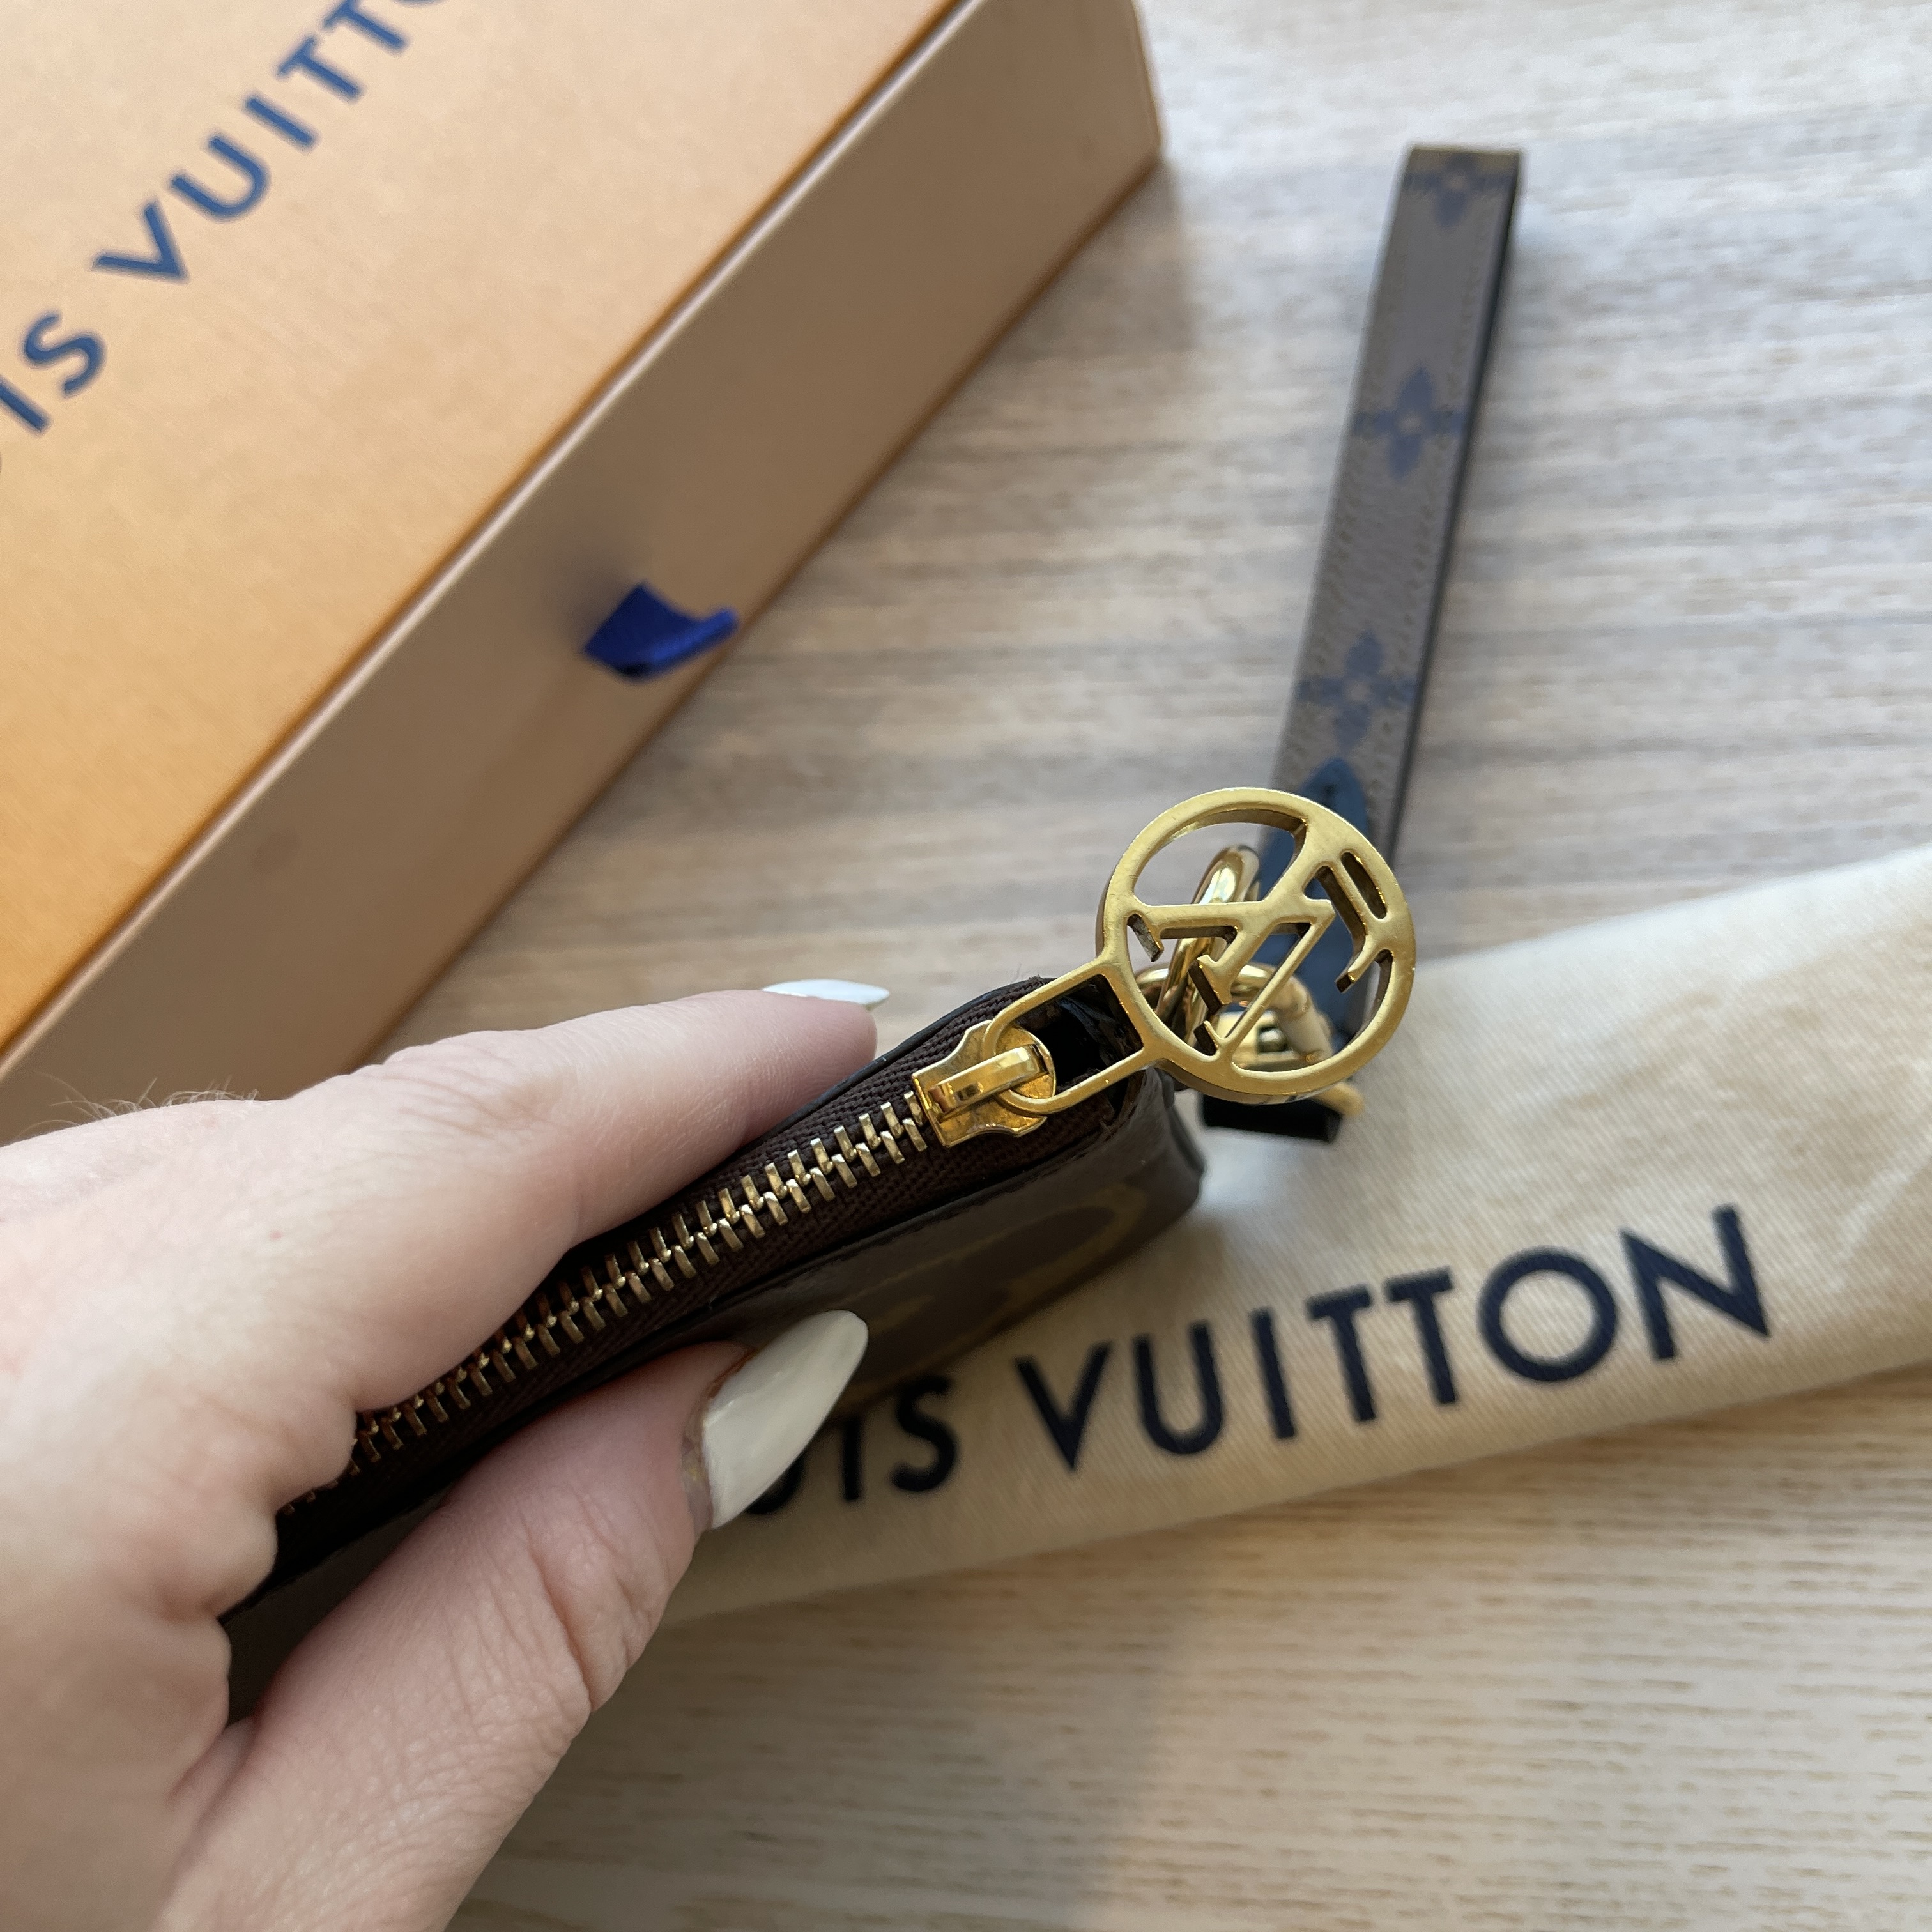 Shop Louis Vuitton MONOGRAM Trio pouch (M68756) by luxurysuite